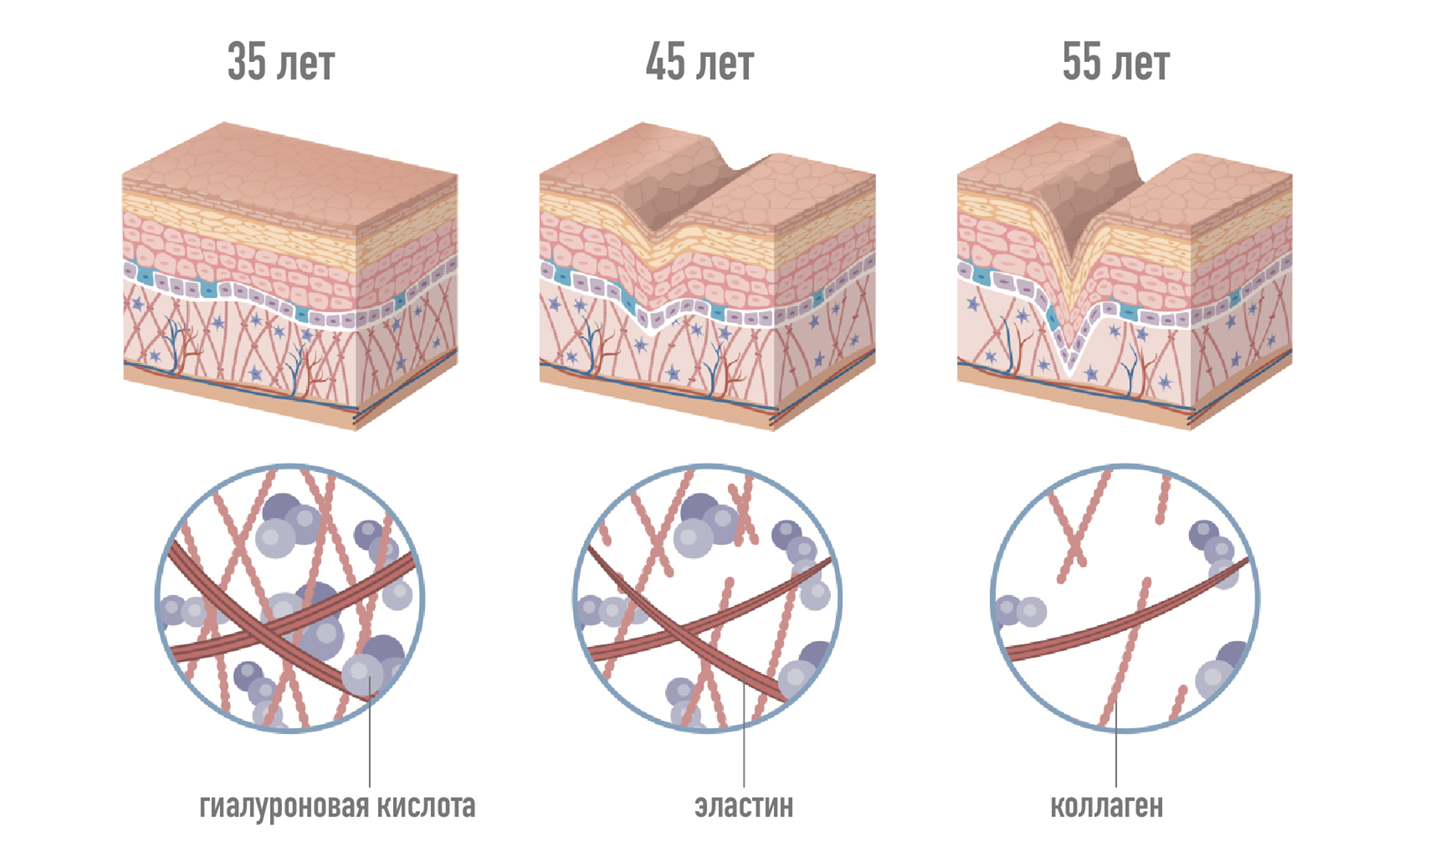 Схема старения кожи: уменьшение гиалуроновой кислоты, эластина и коллагена с возрастом. Разница в 35, 45 и 55 лет.